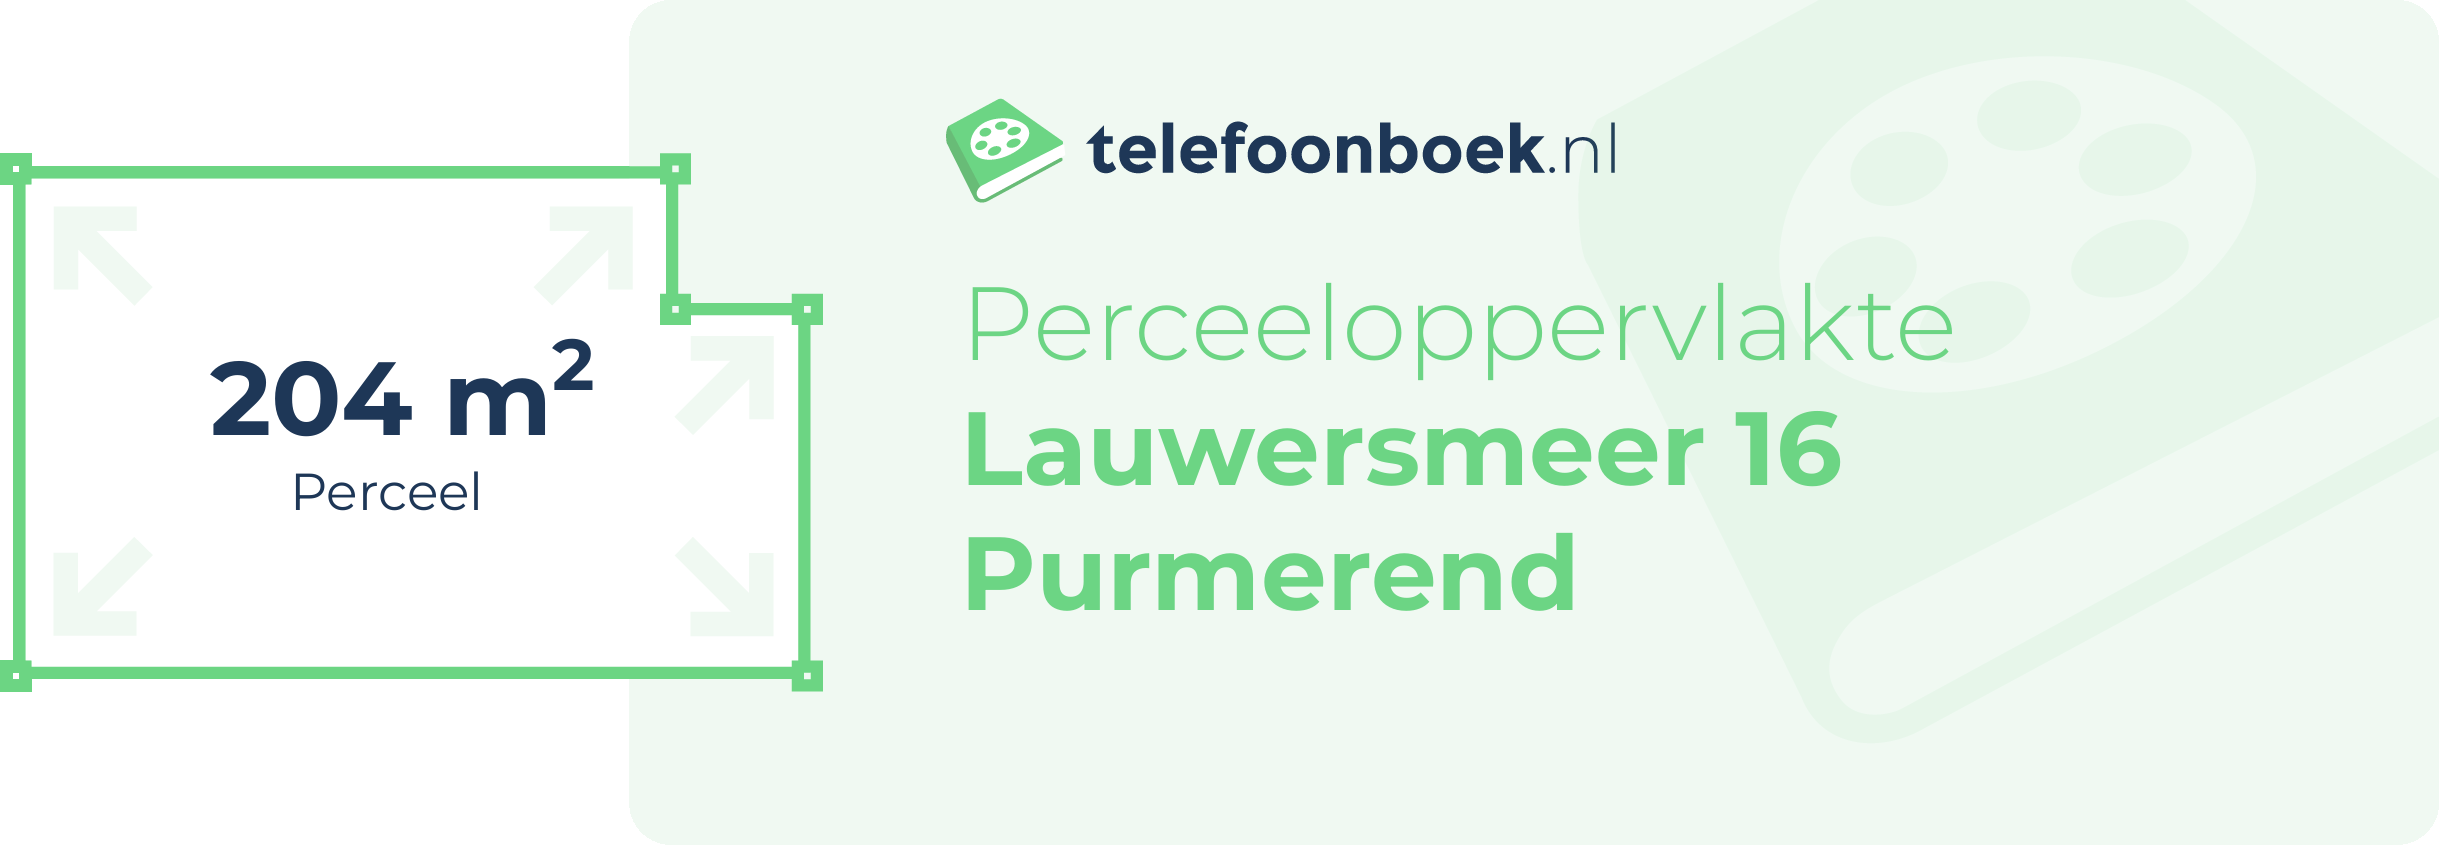 Perceeloppervlakte Lauwersmeer 16 Purmerend